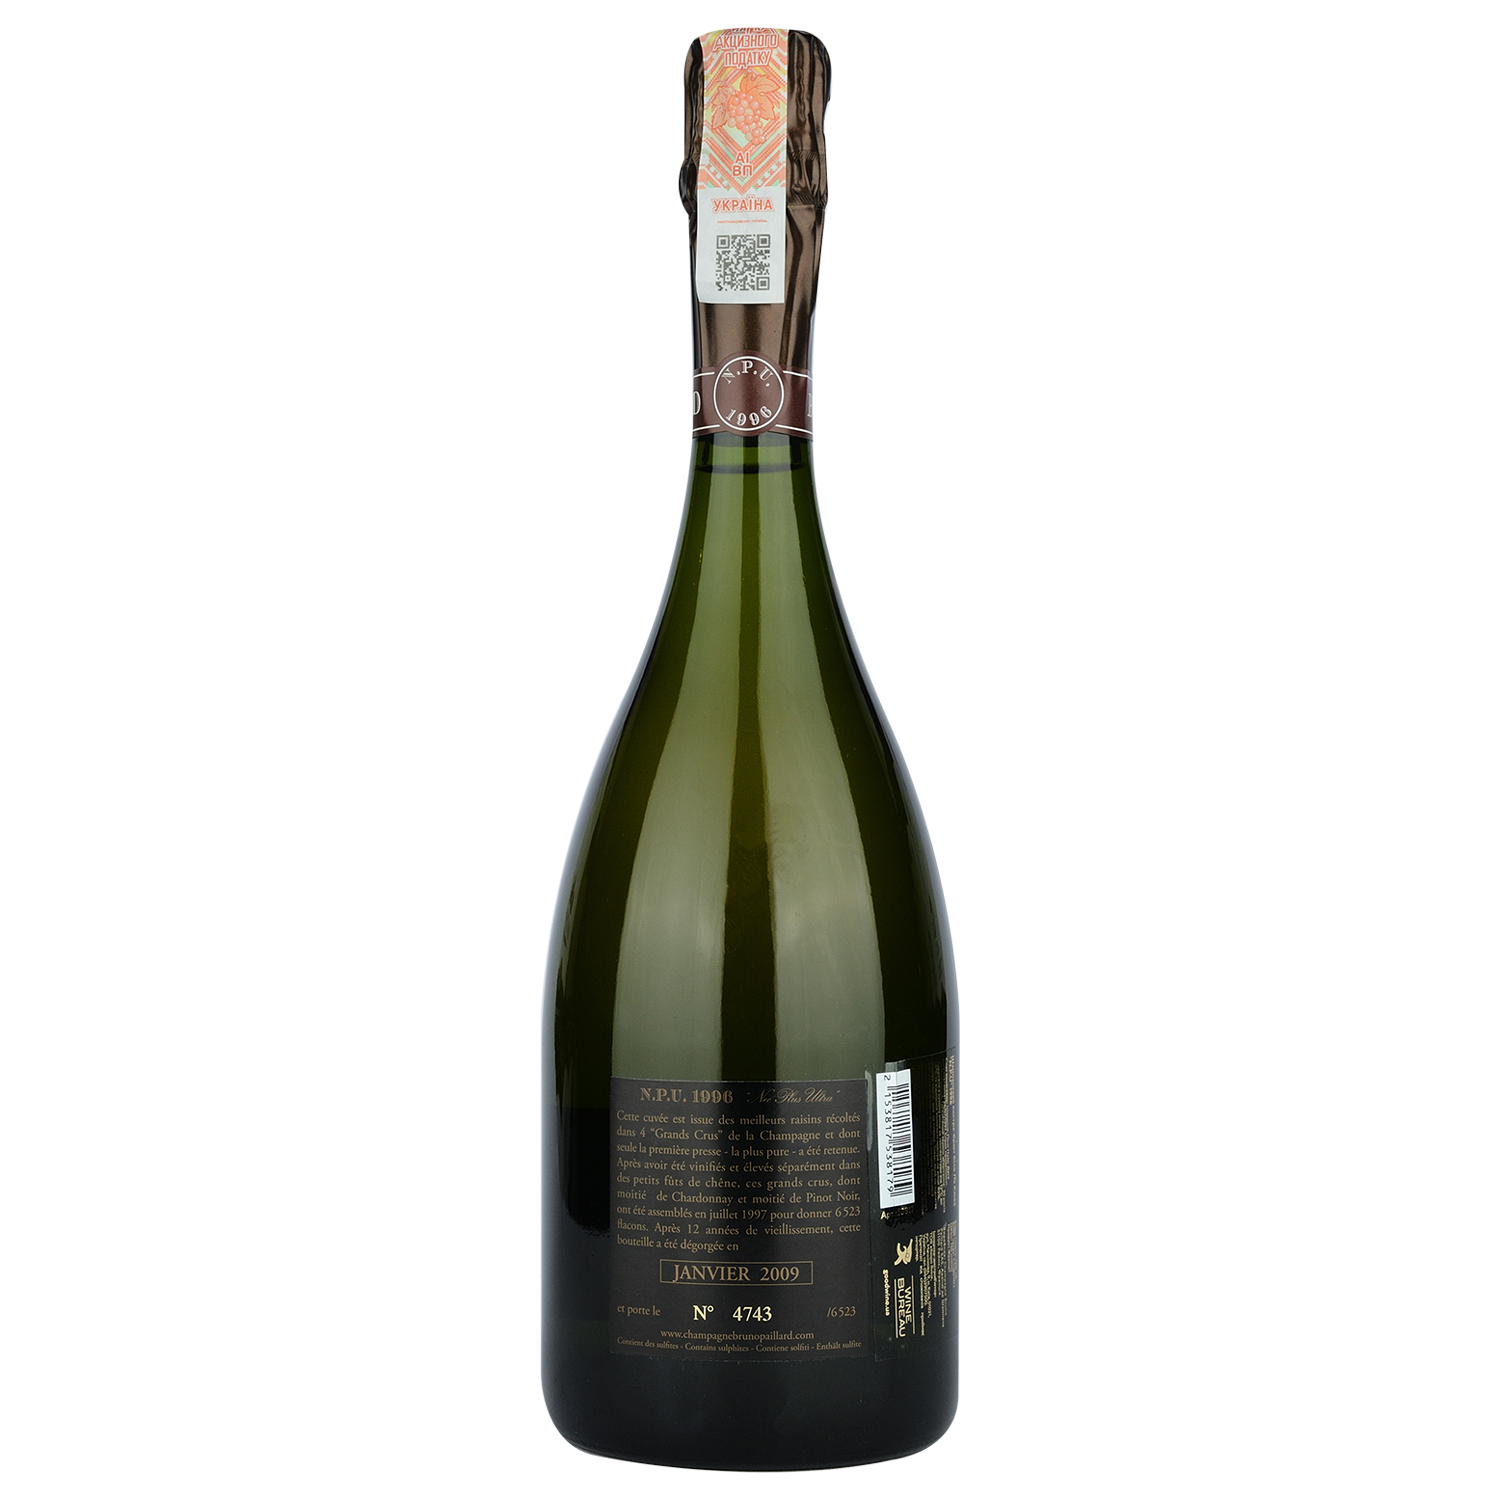 Шампанское Bruno Paillard La Cuvee N.P.U. 1996, белое, экстра-брют, 0,75 л (53817) - фото 2